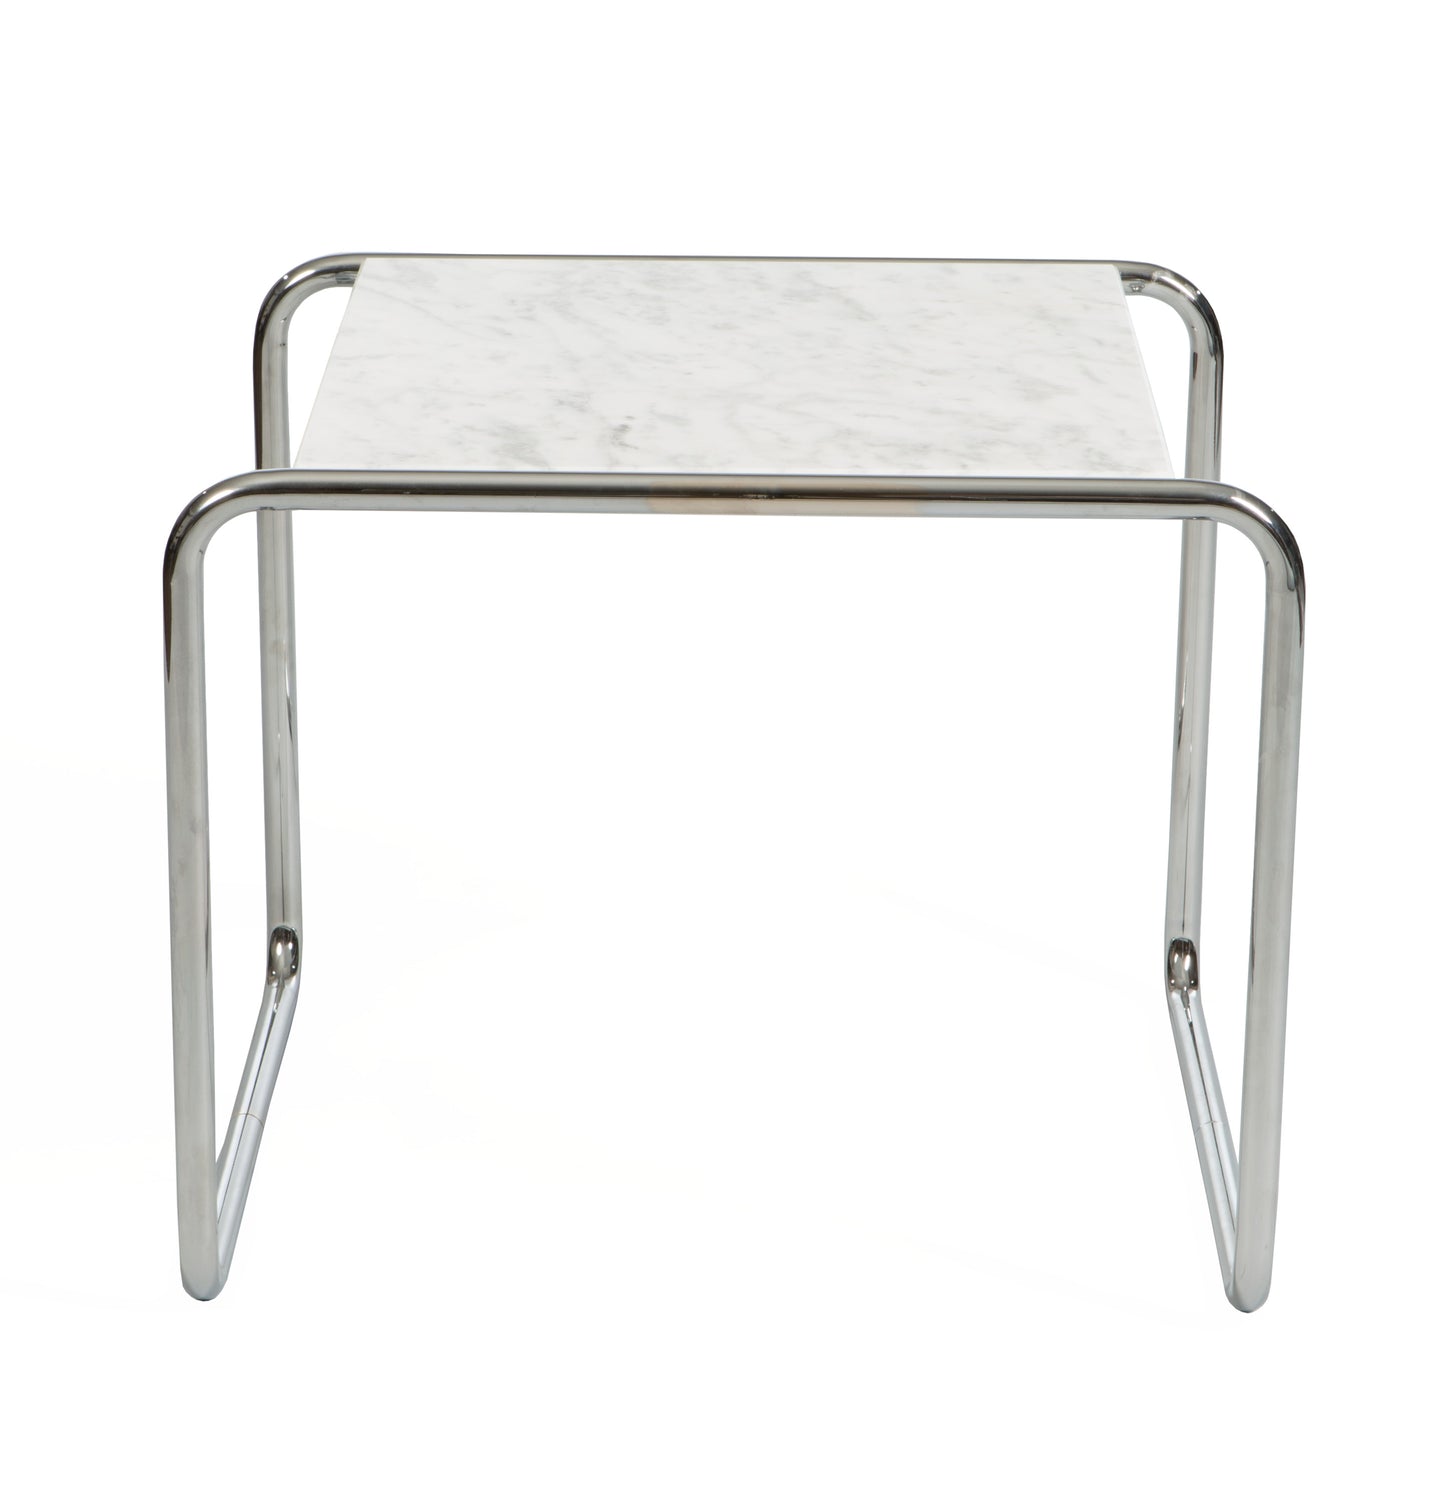 Laccio table style | Carrara | Side